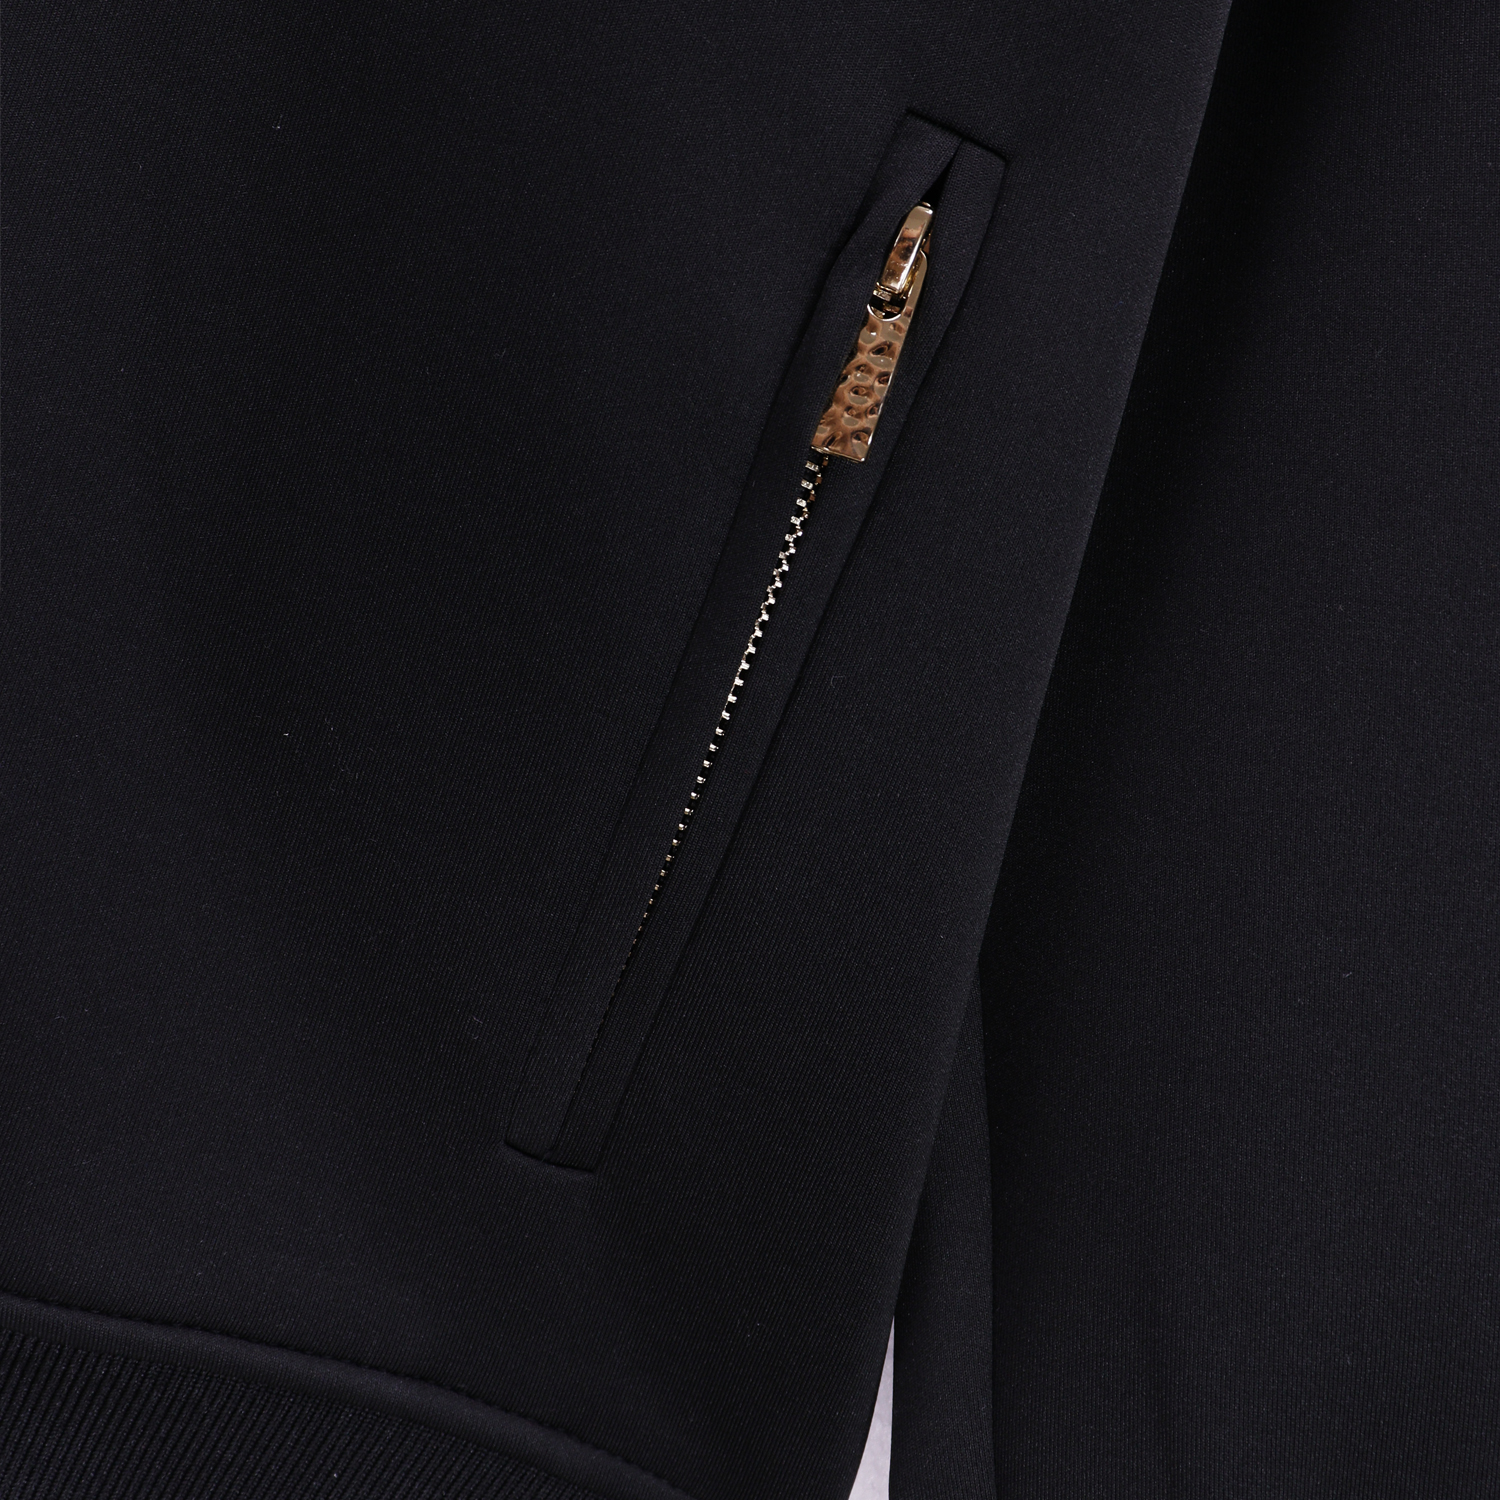 mens jacket palm designer coat designer jacket Embroidered Letters New Casual Jacket Black